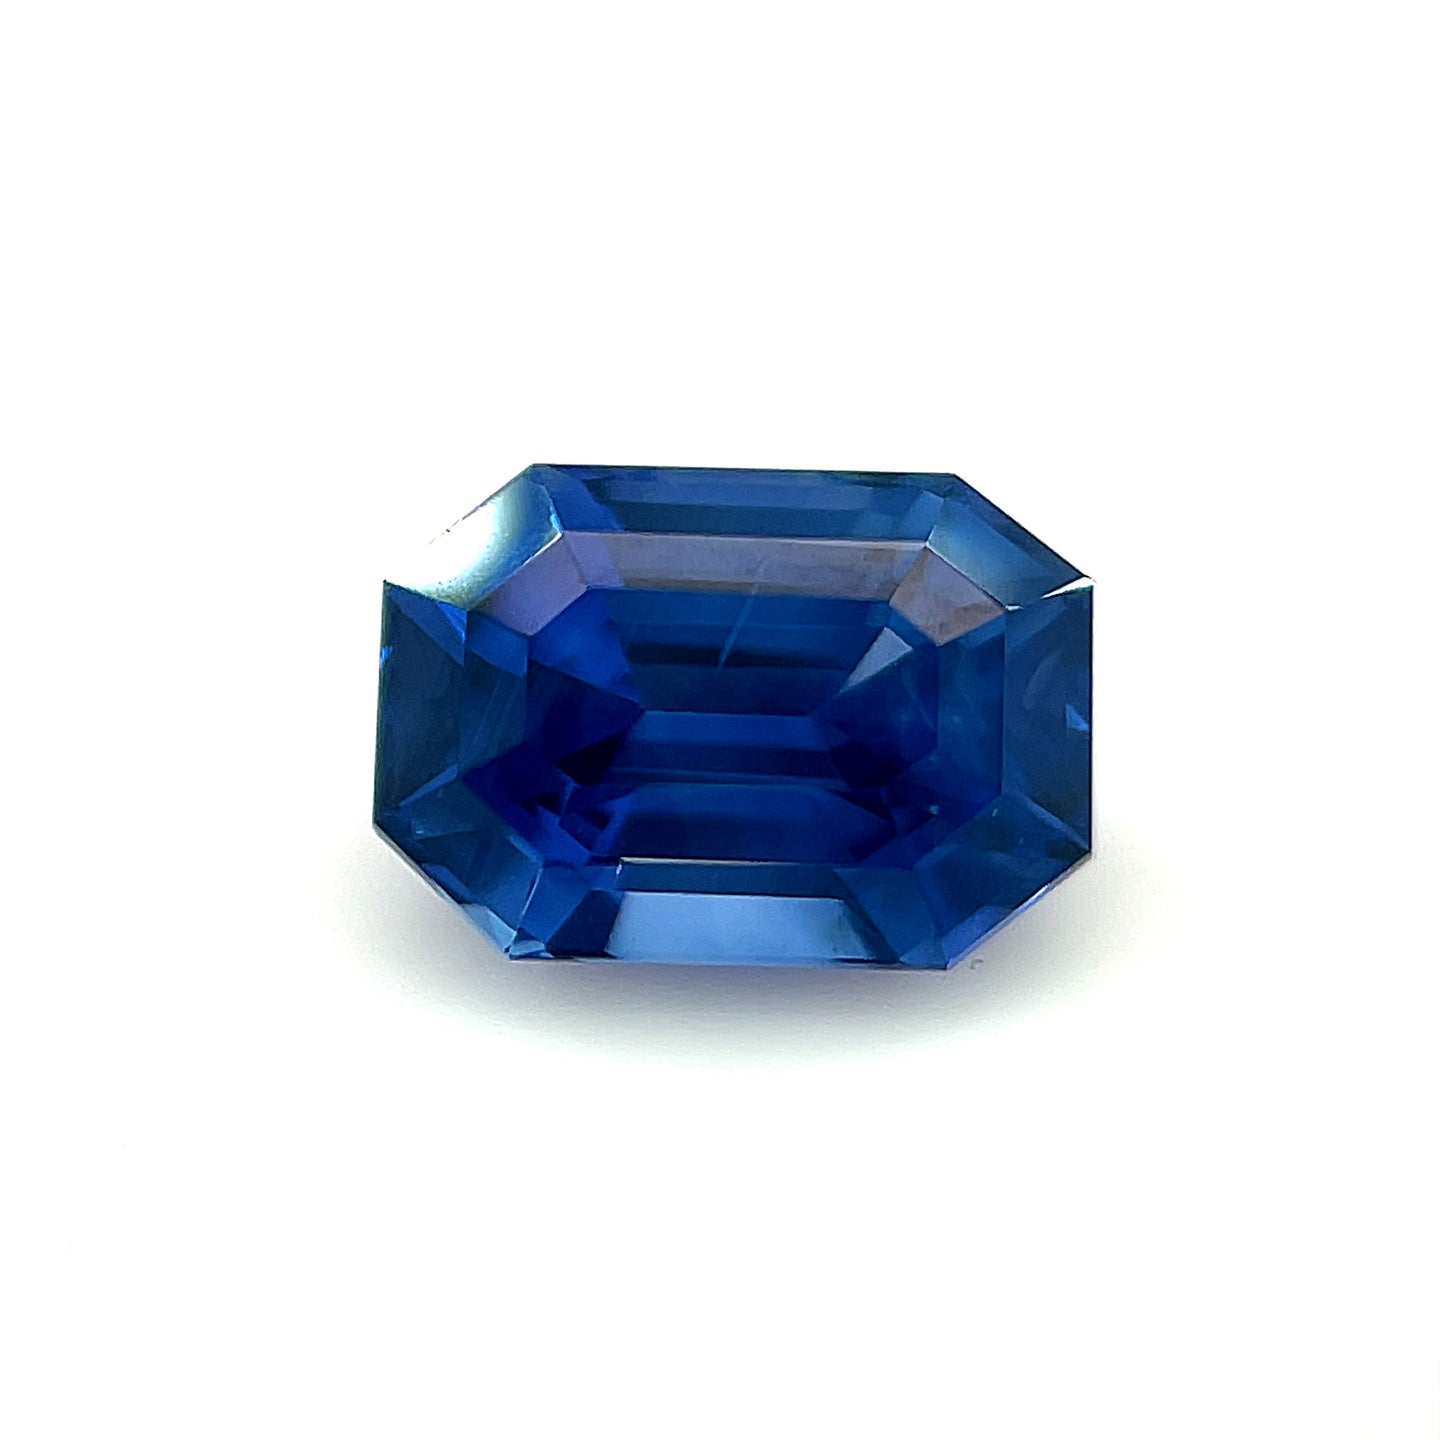 2.28 ct. Heated Emerald Cut Blue Sapphire